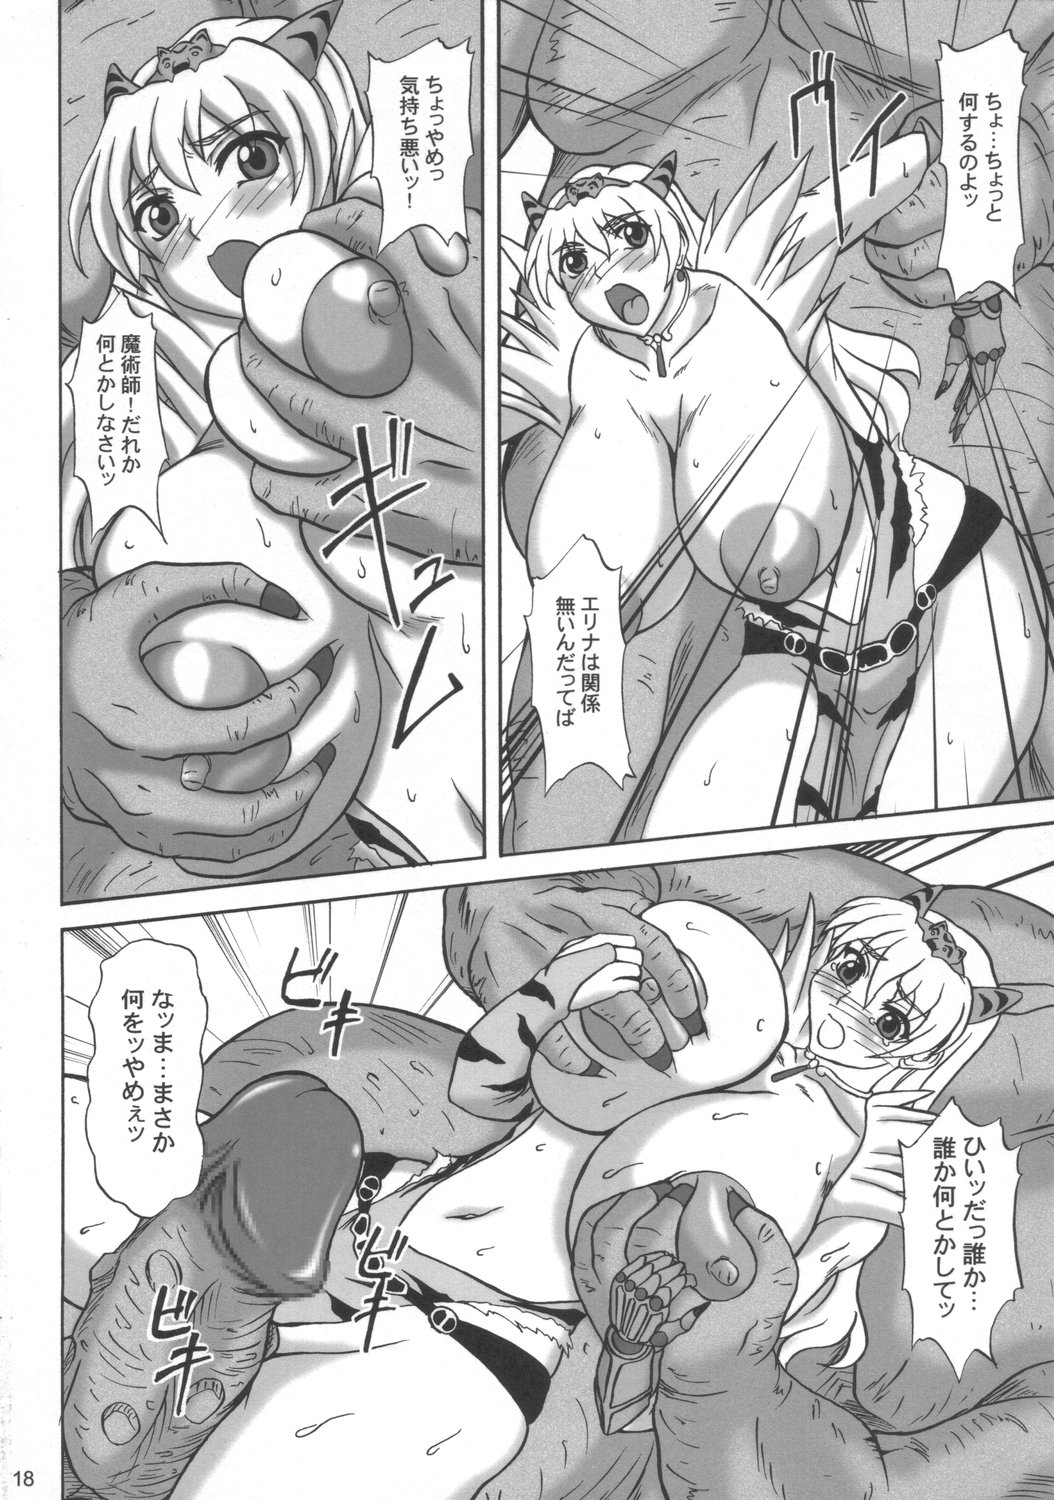 (SC33) [Anglachel (Yamamura Natsuru)] Injoku no Senshi Leina & Elina (Queen's Blade) page 17 full